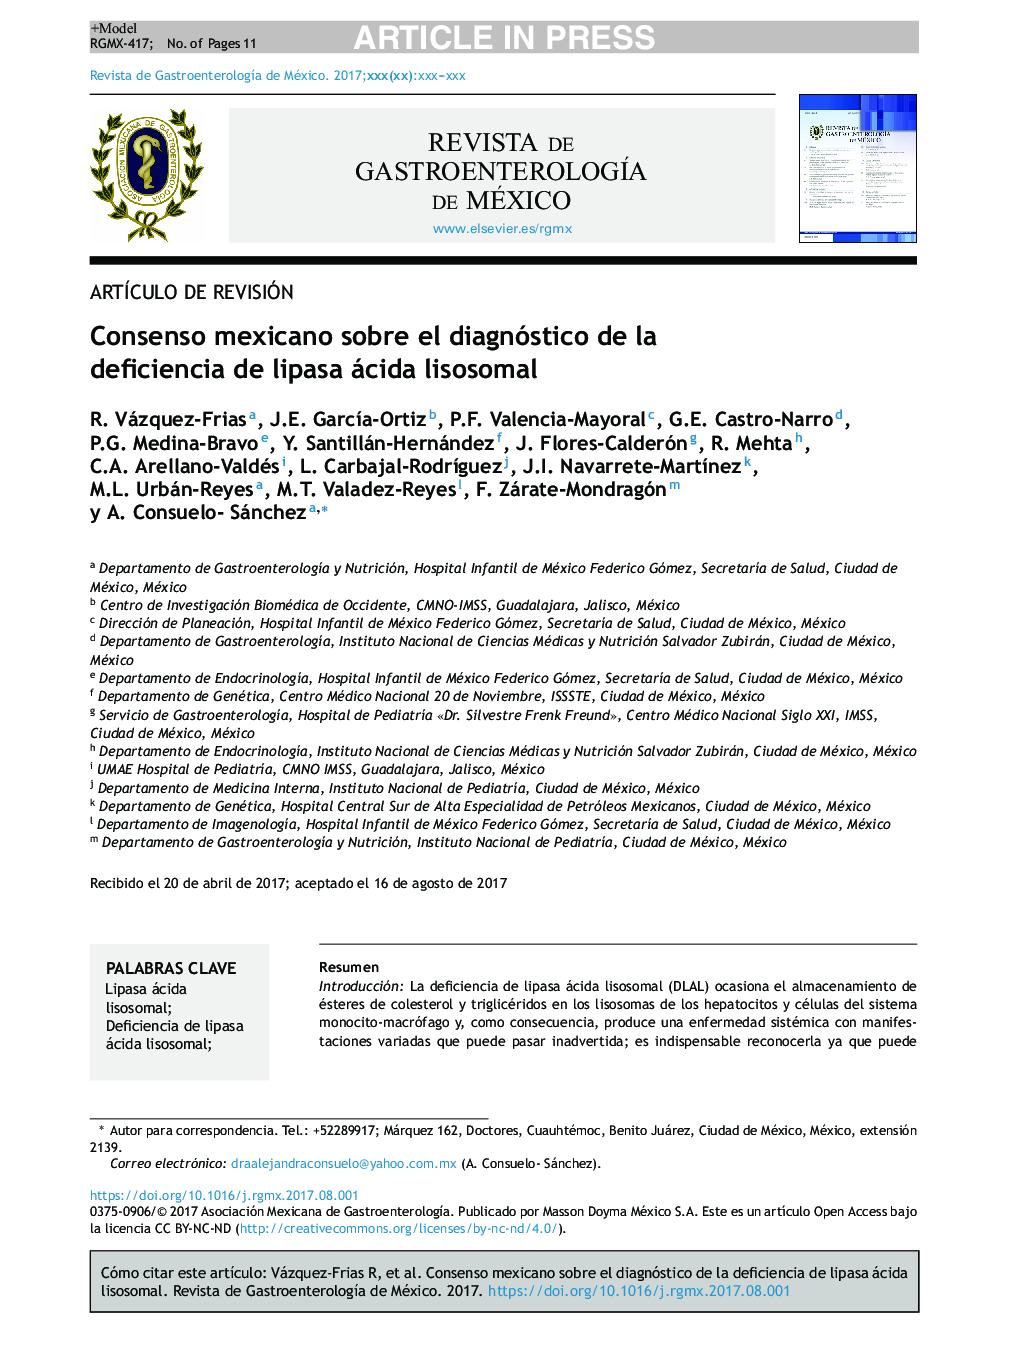 Consenso mexicano sobre el diagnóstico de la deficiencia de lipasa ácida lisosomal